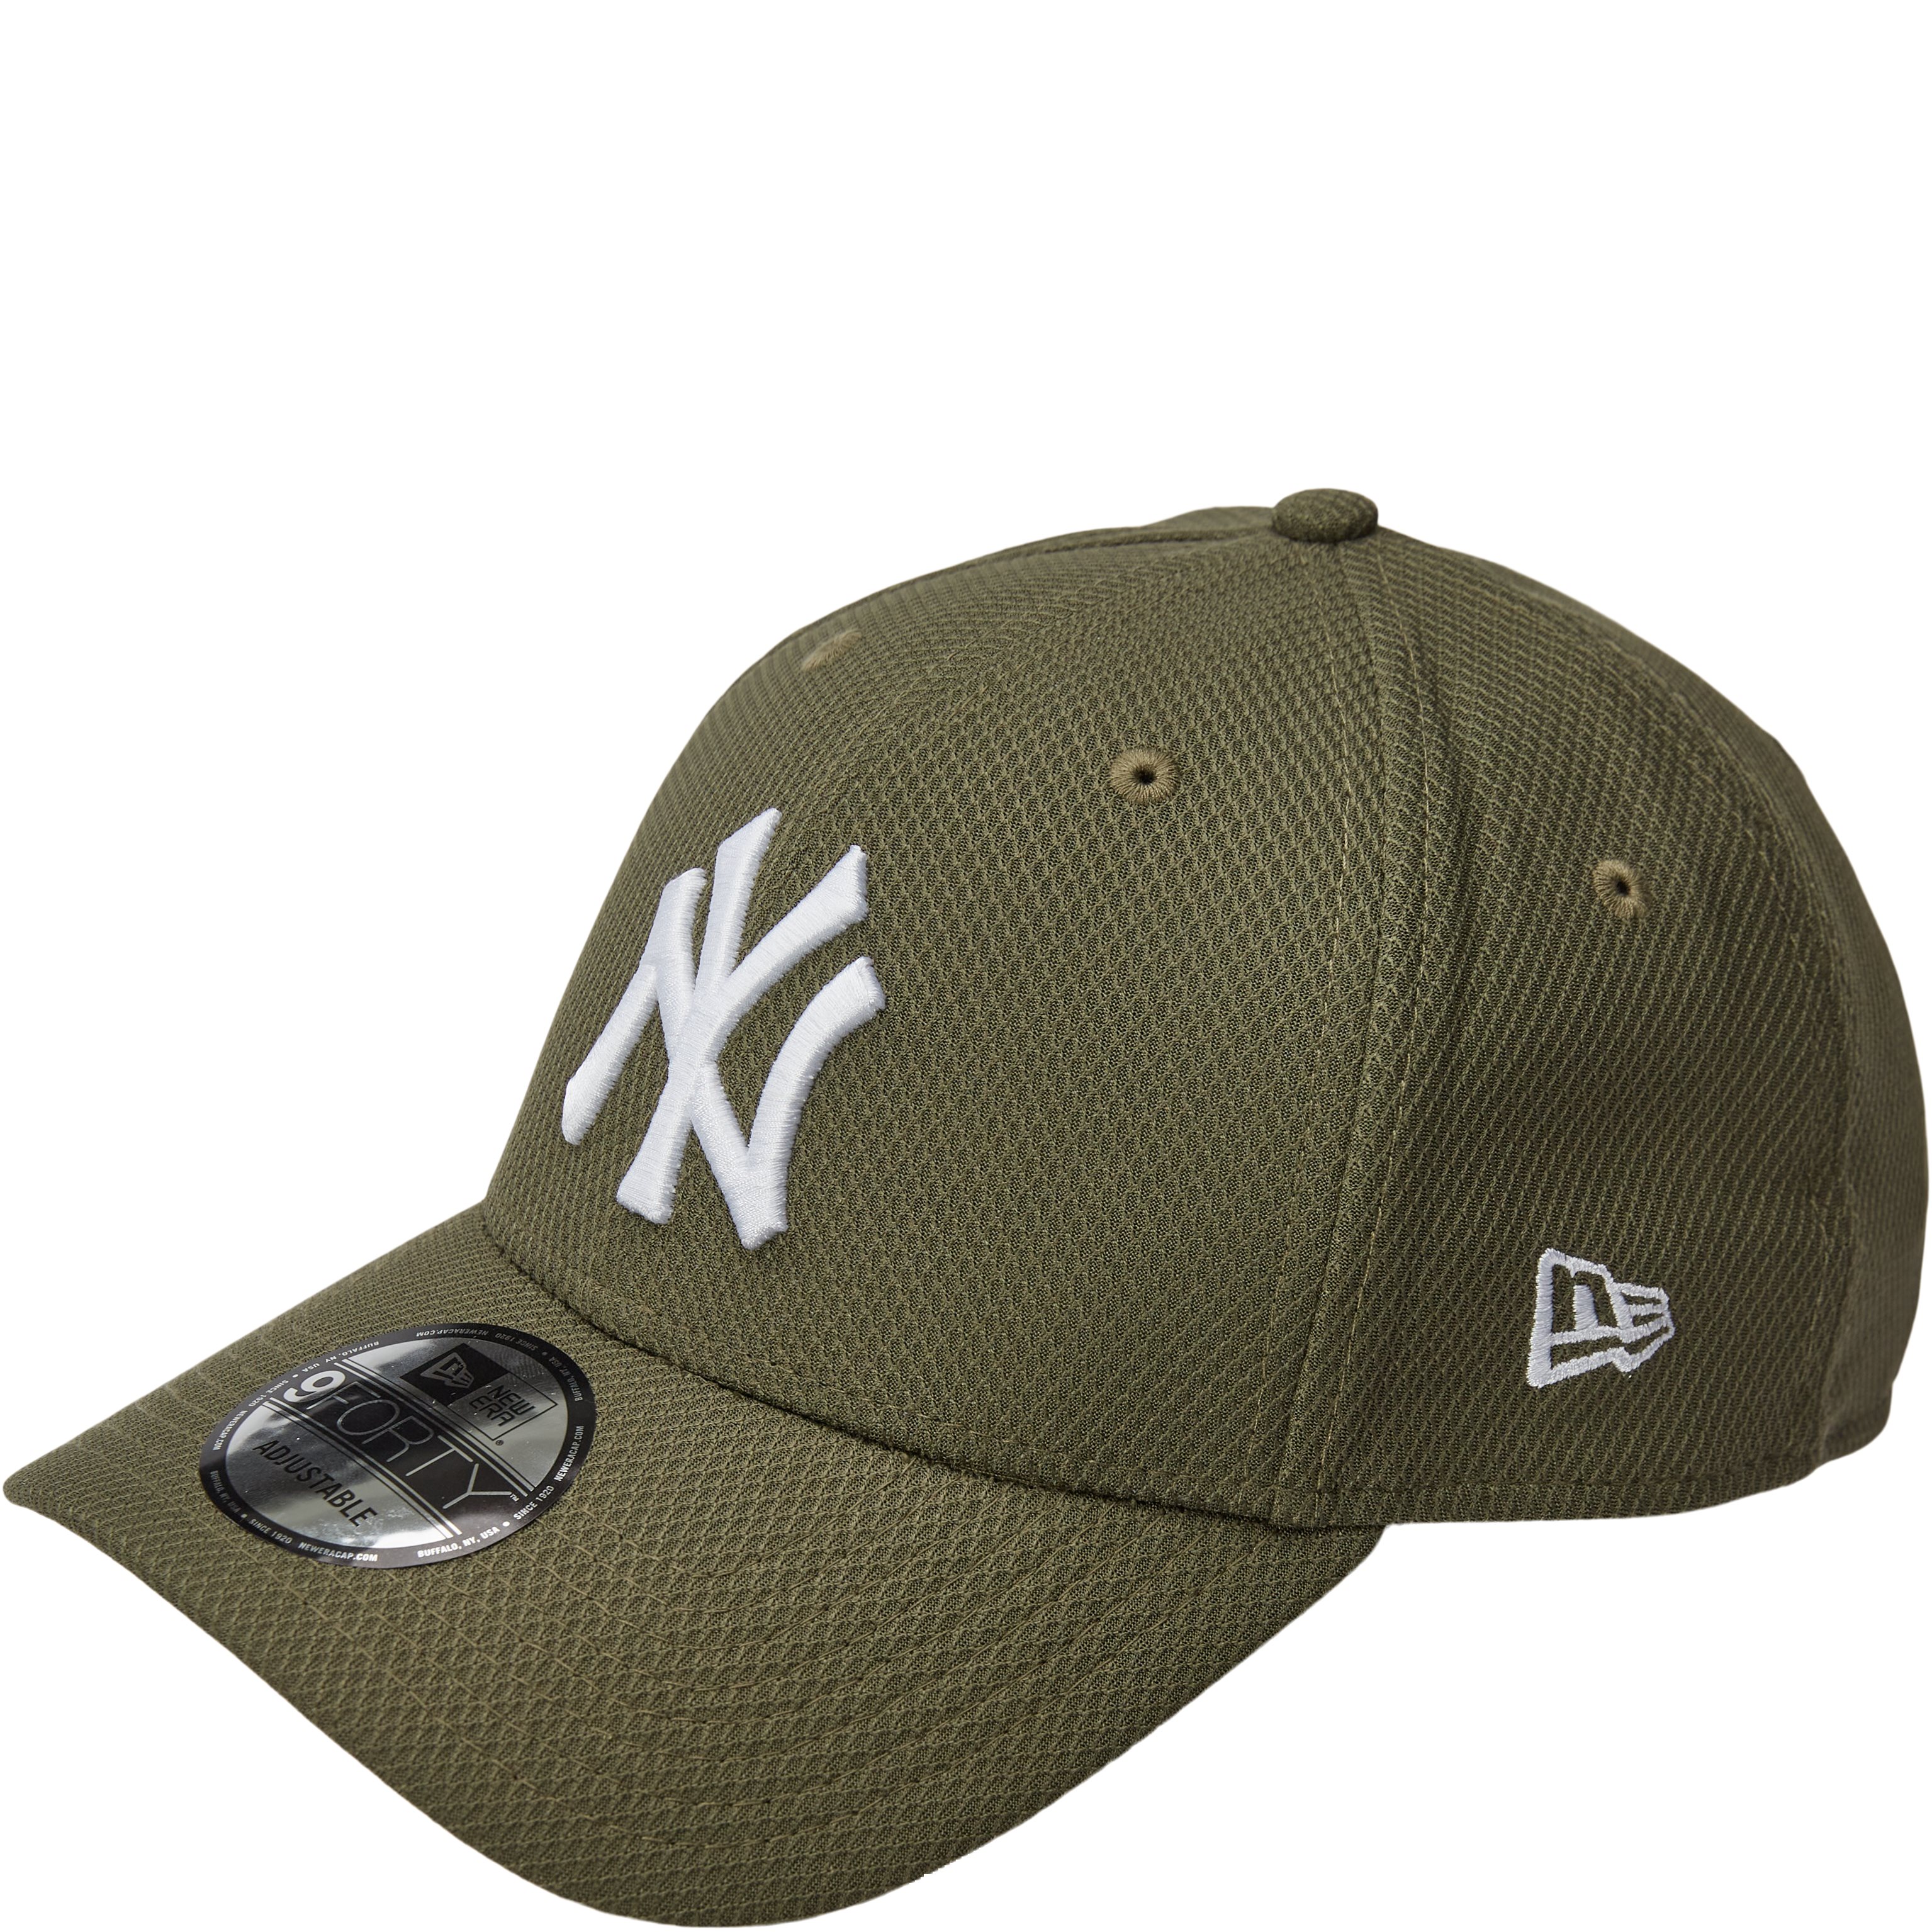 940 Ny Diamond Cap - Caps - Green